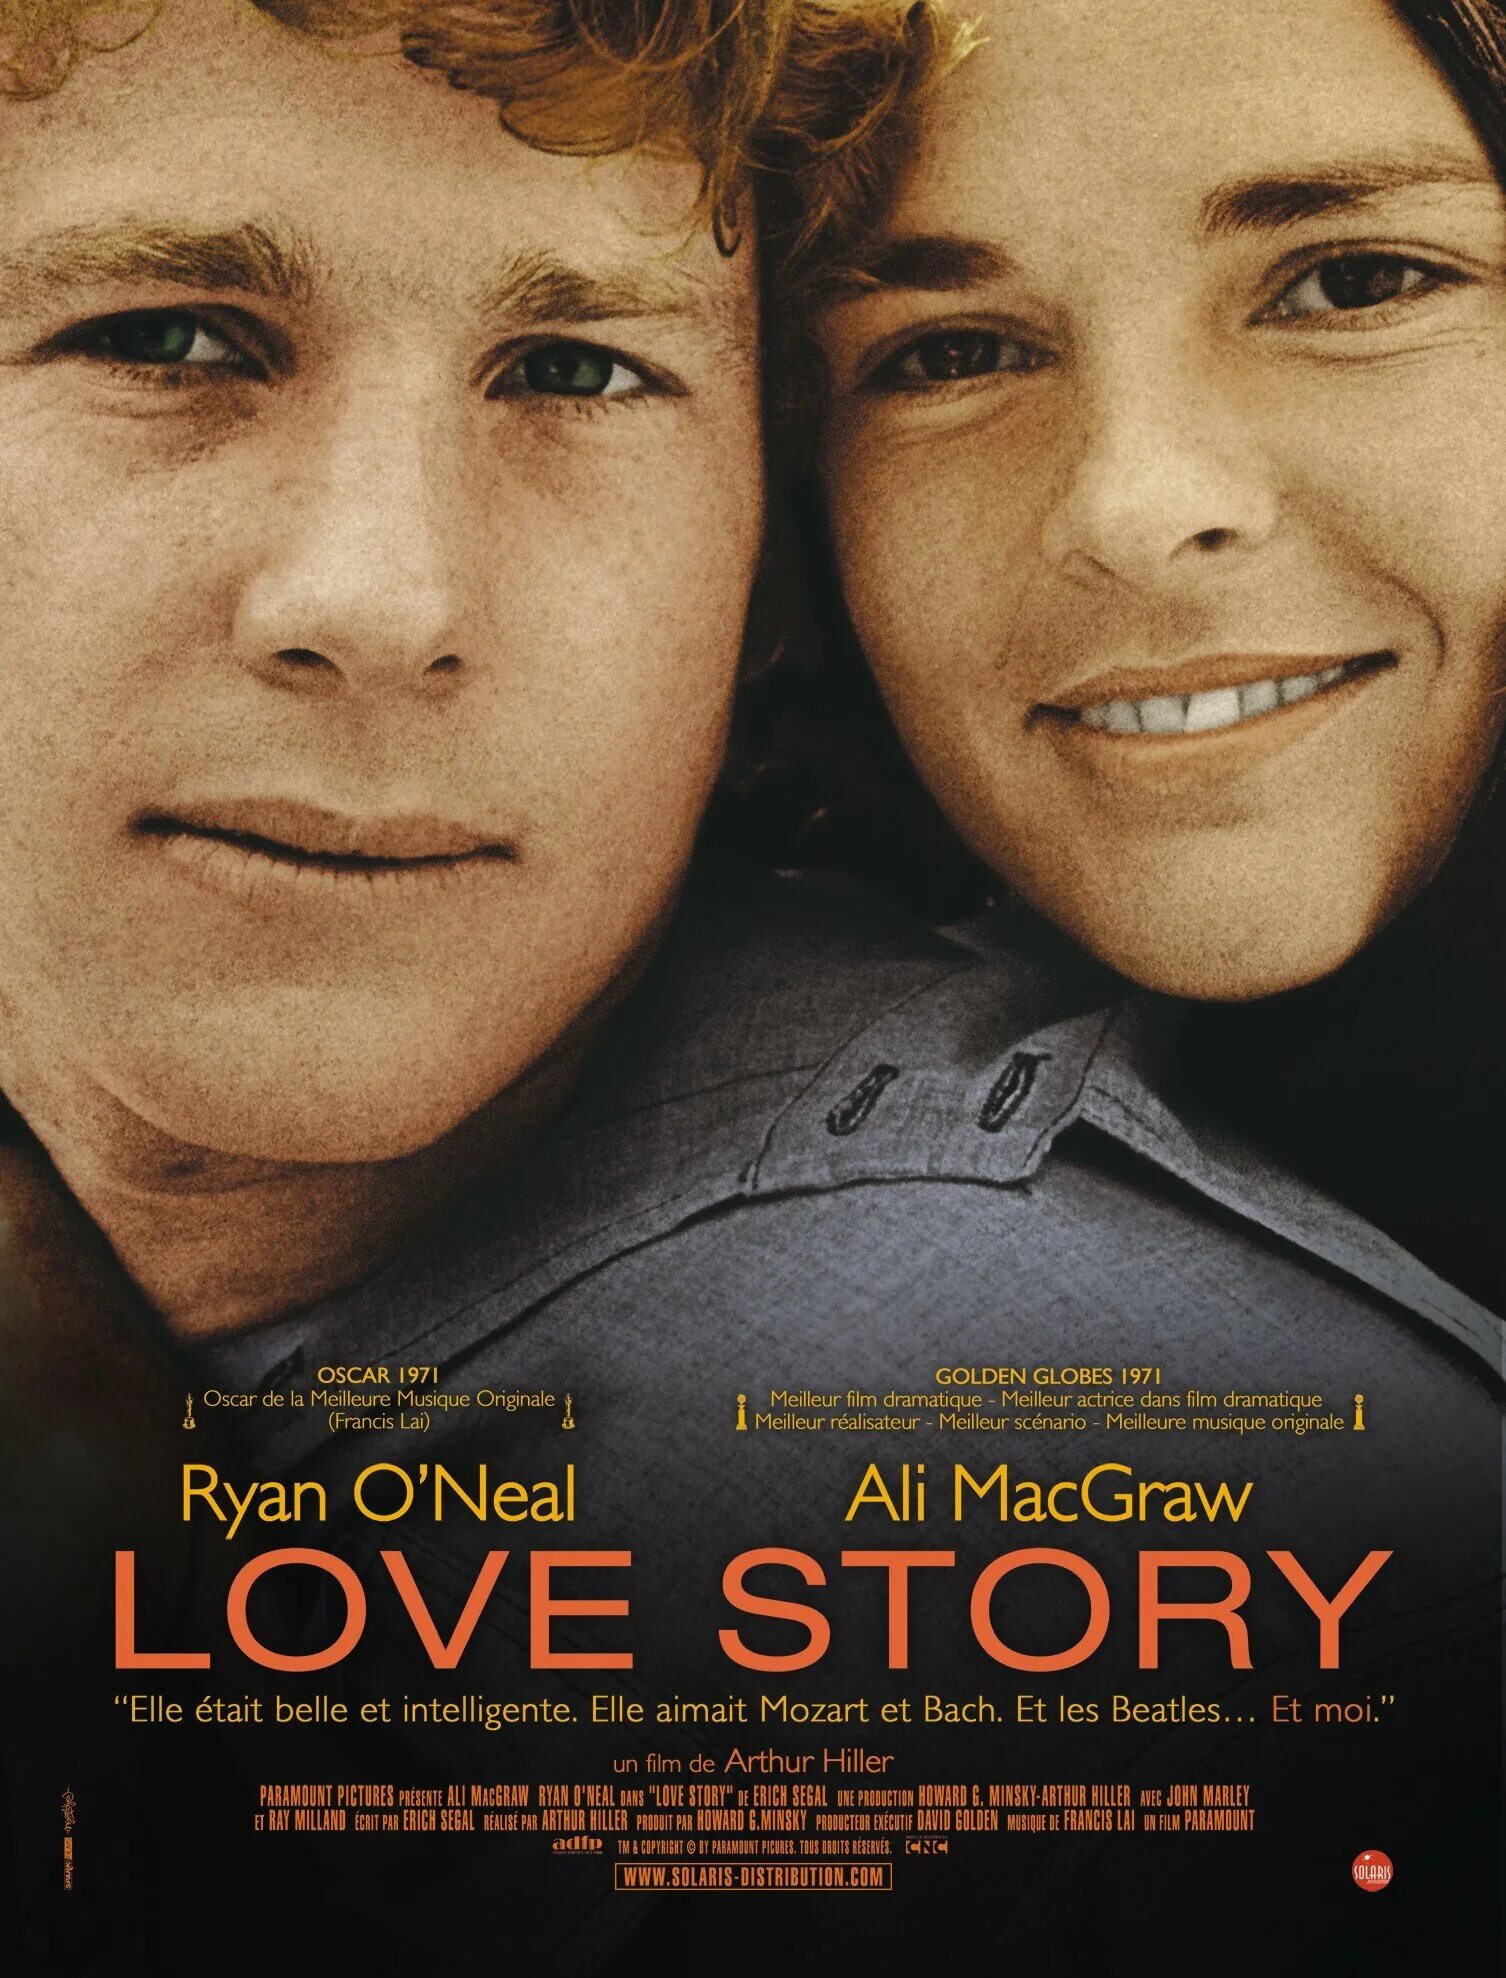 Название истории любви. Постеры к фильмам. Постер история любви.